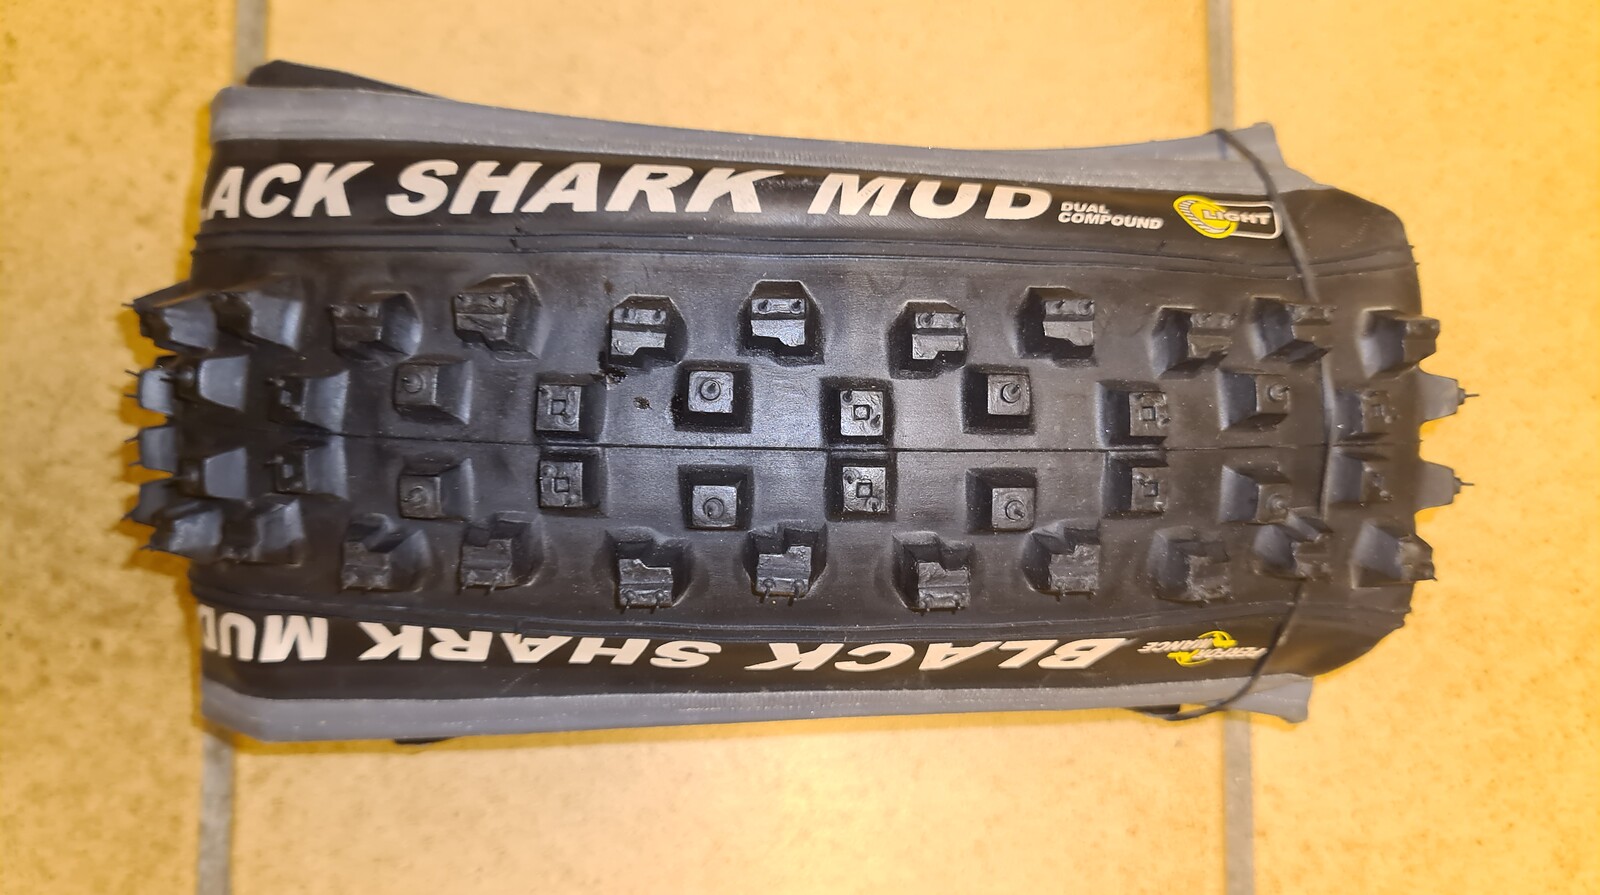 26" Schwalbe Black Shark Light Fahrrad Reifen 